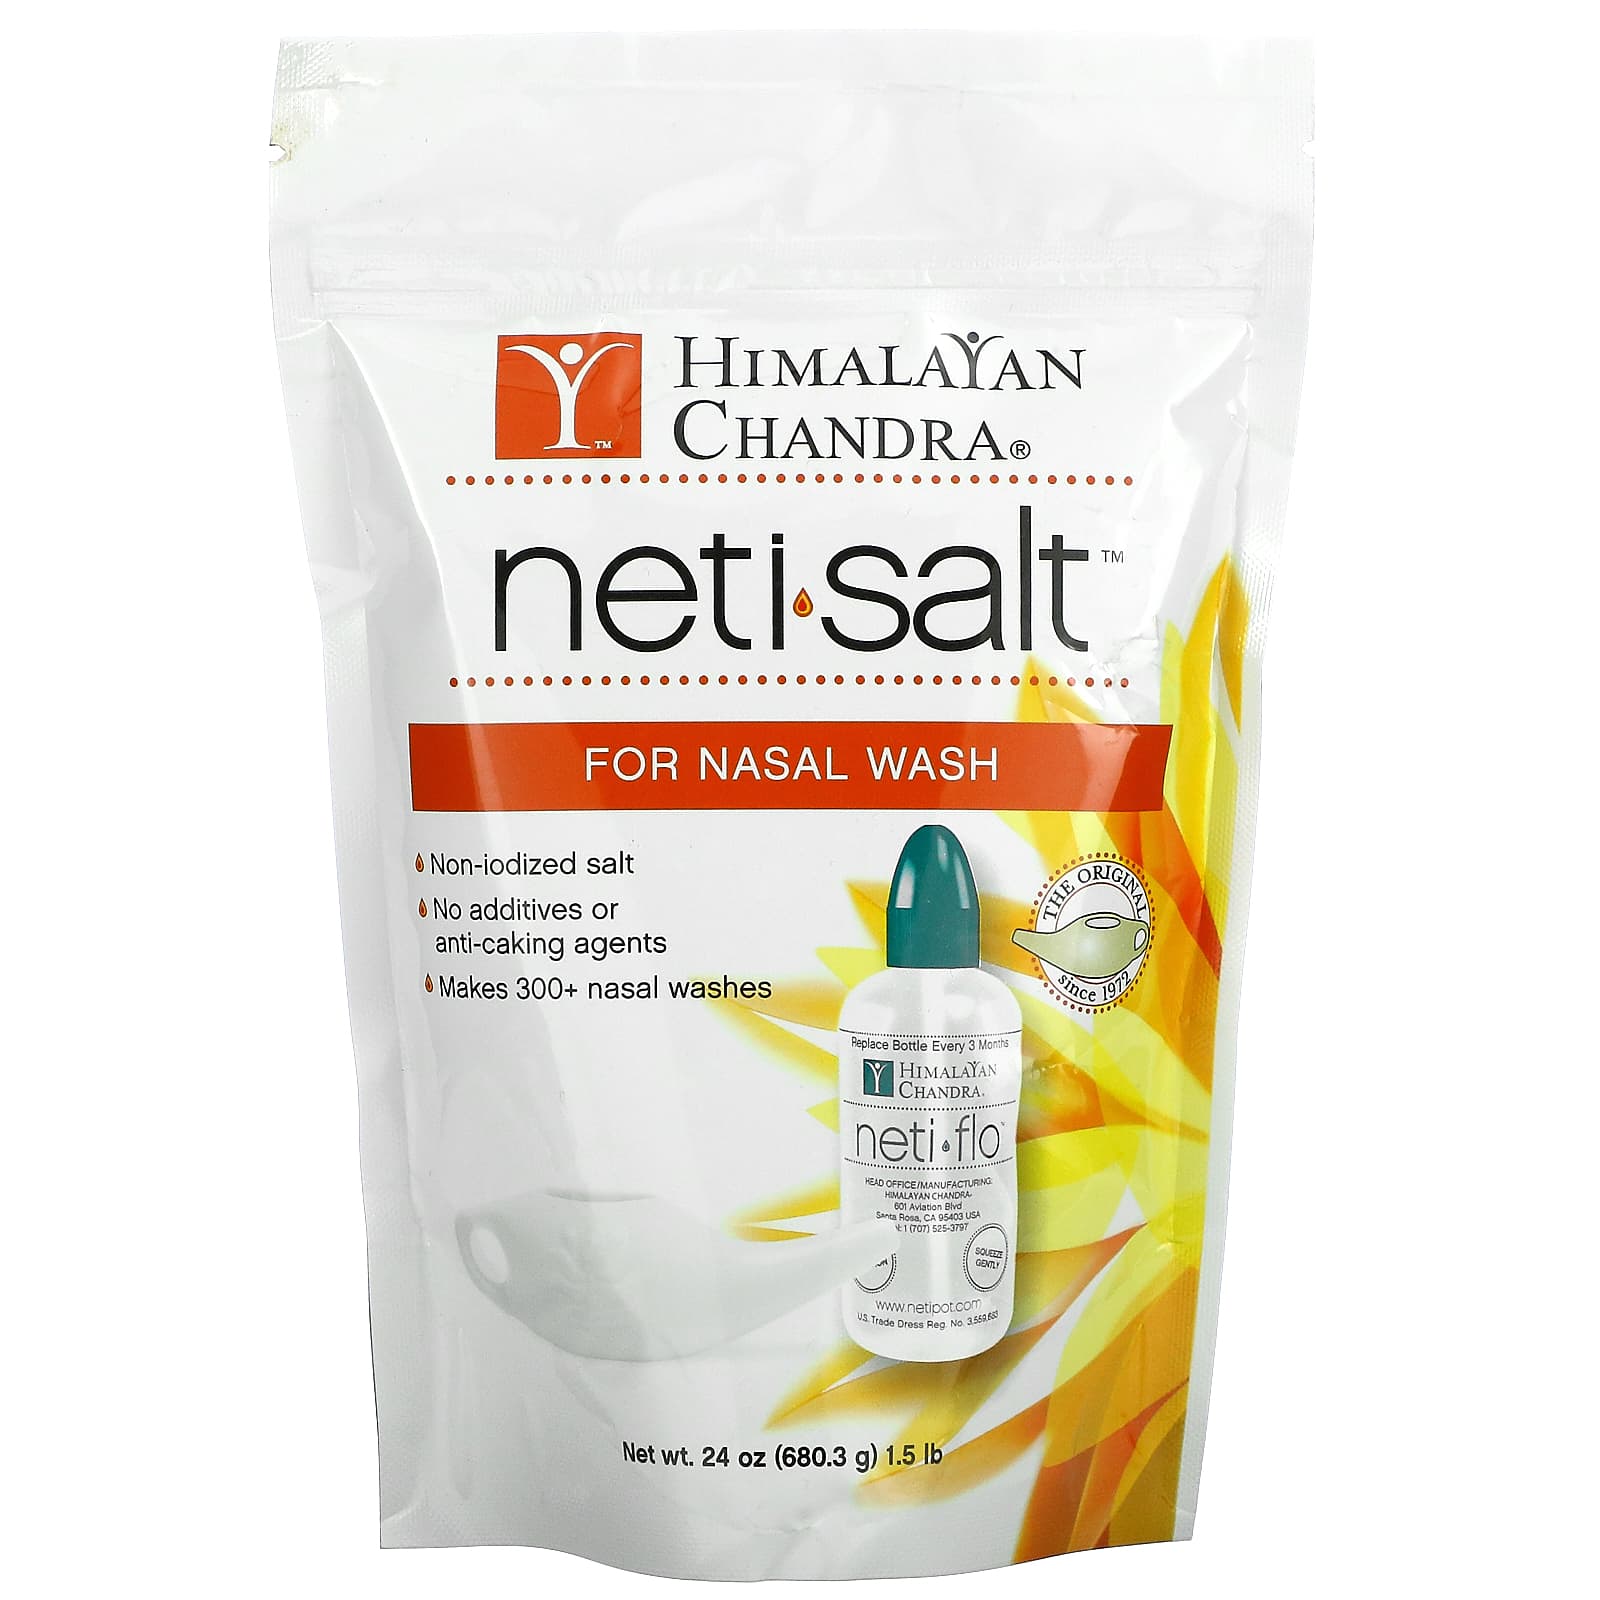 Neti Salt, Salt for Nasal Wash, 1.5 lbs (680.3 g)